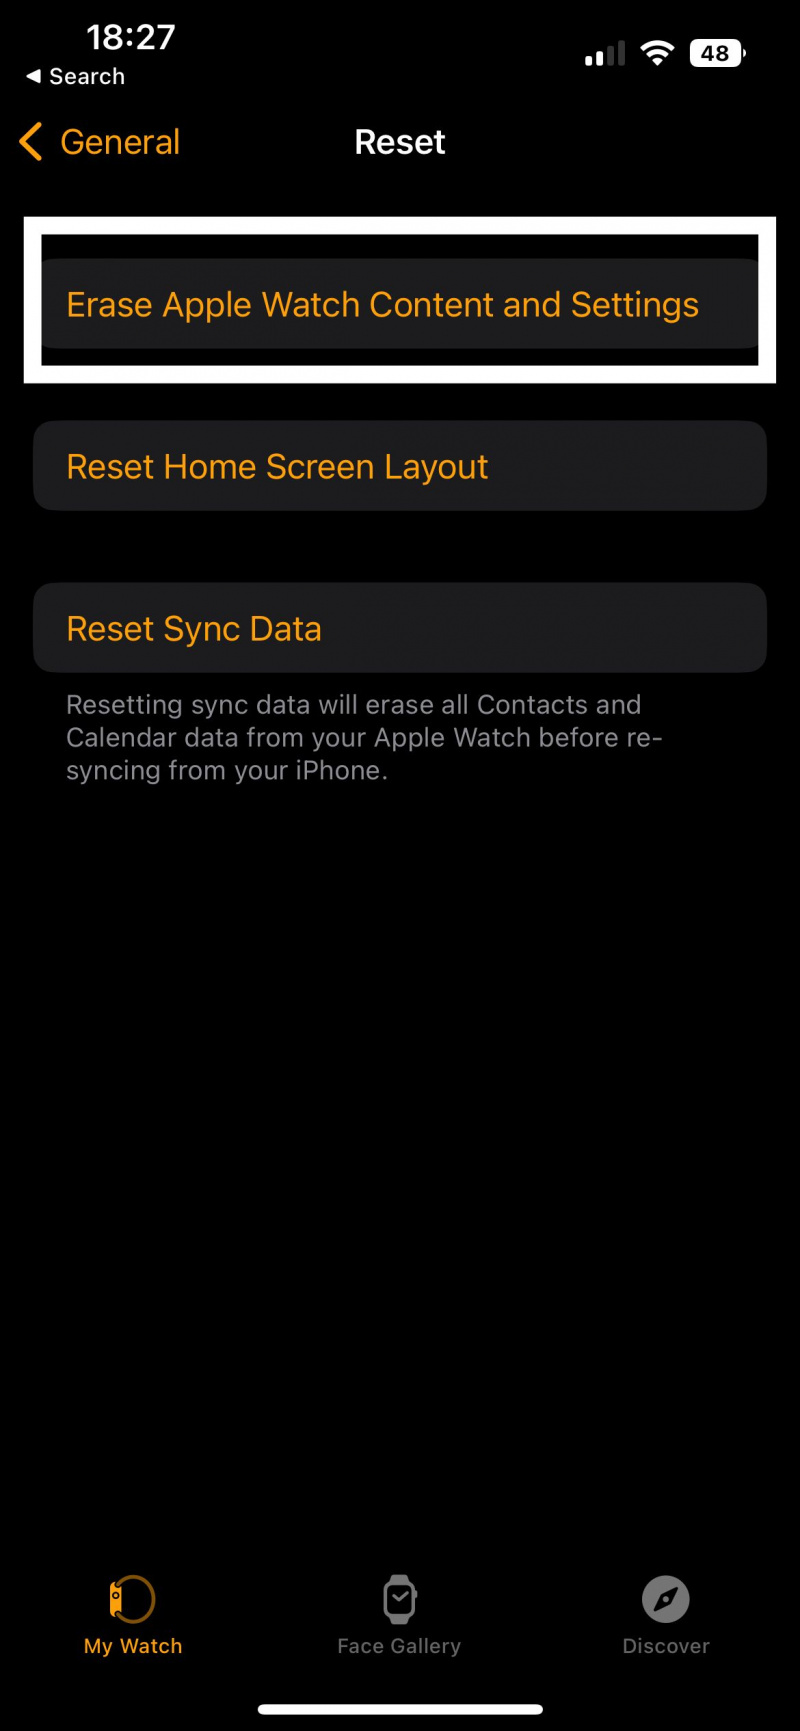   شاهد لقطة شاشة التطبيق التي تعرض مكان النقر لمسح محتوى وإعدادات Apple Watch.